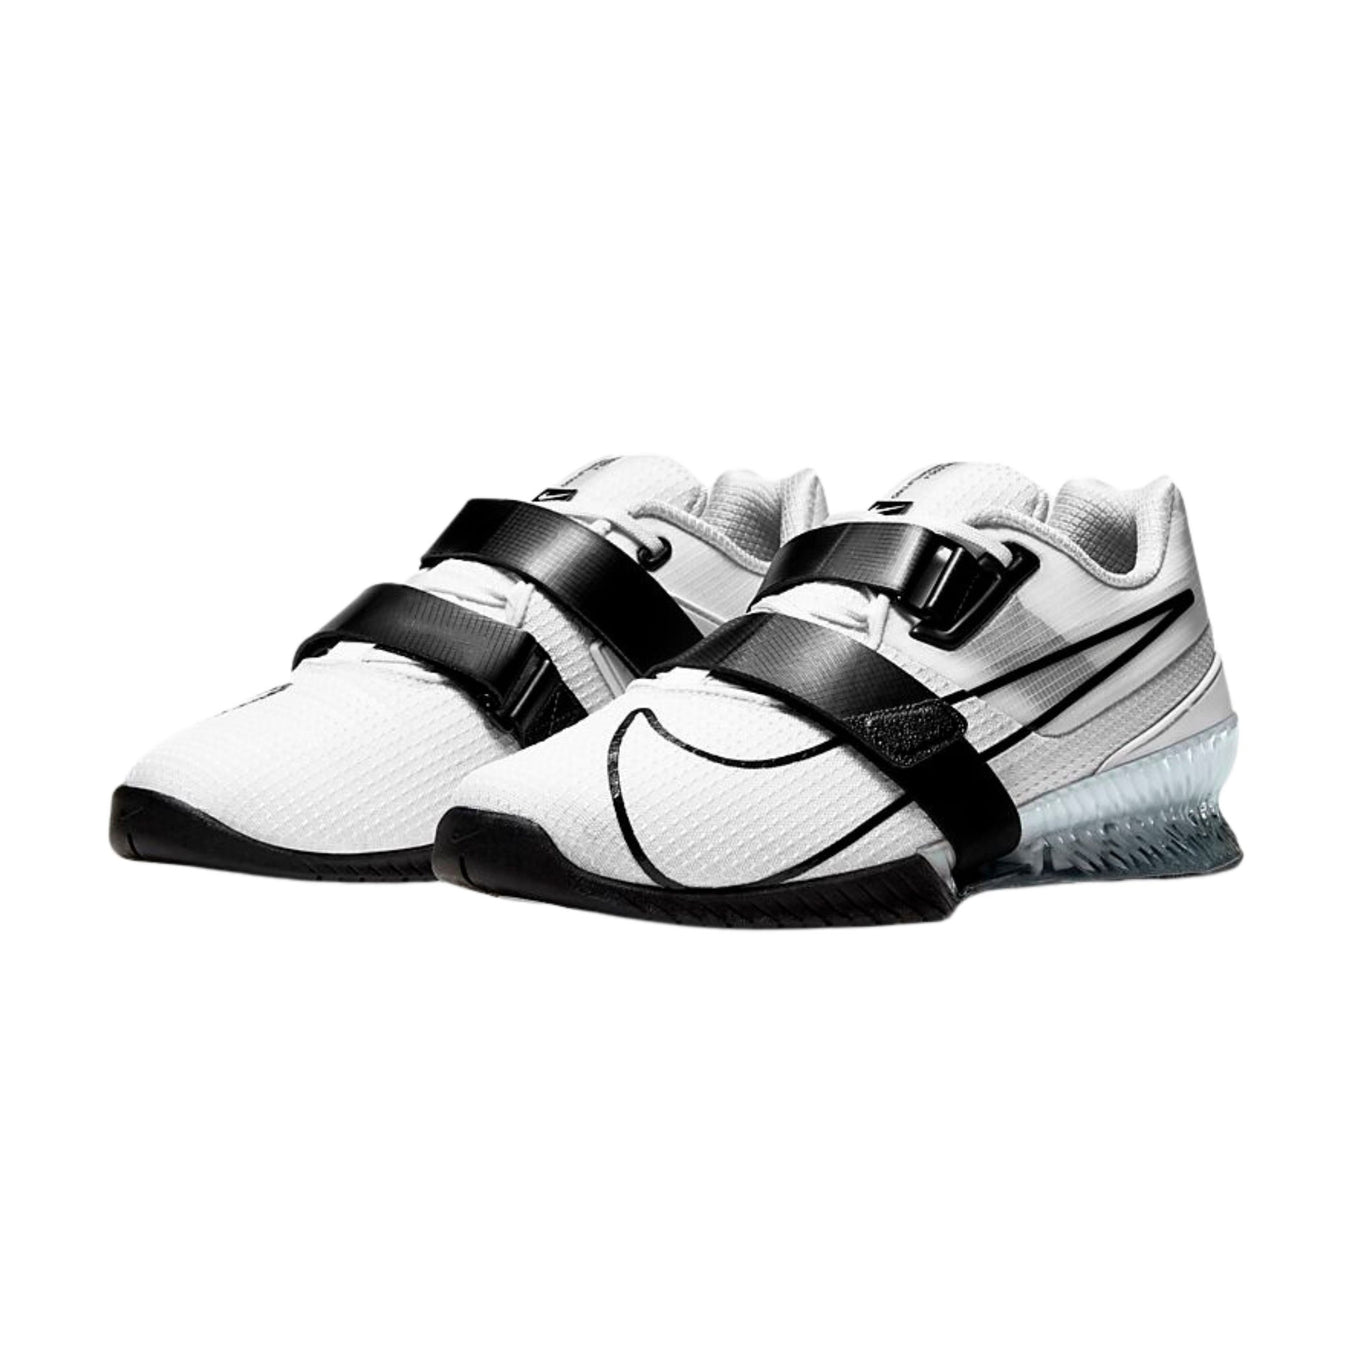 Nike Romaleos 4 Black/White